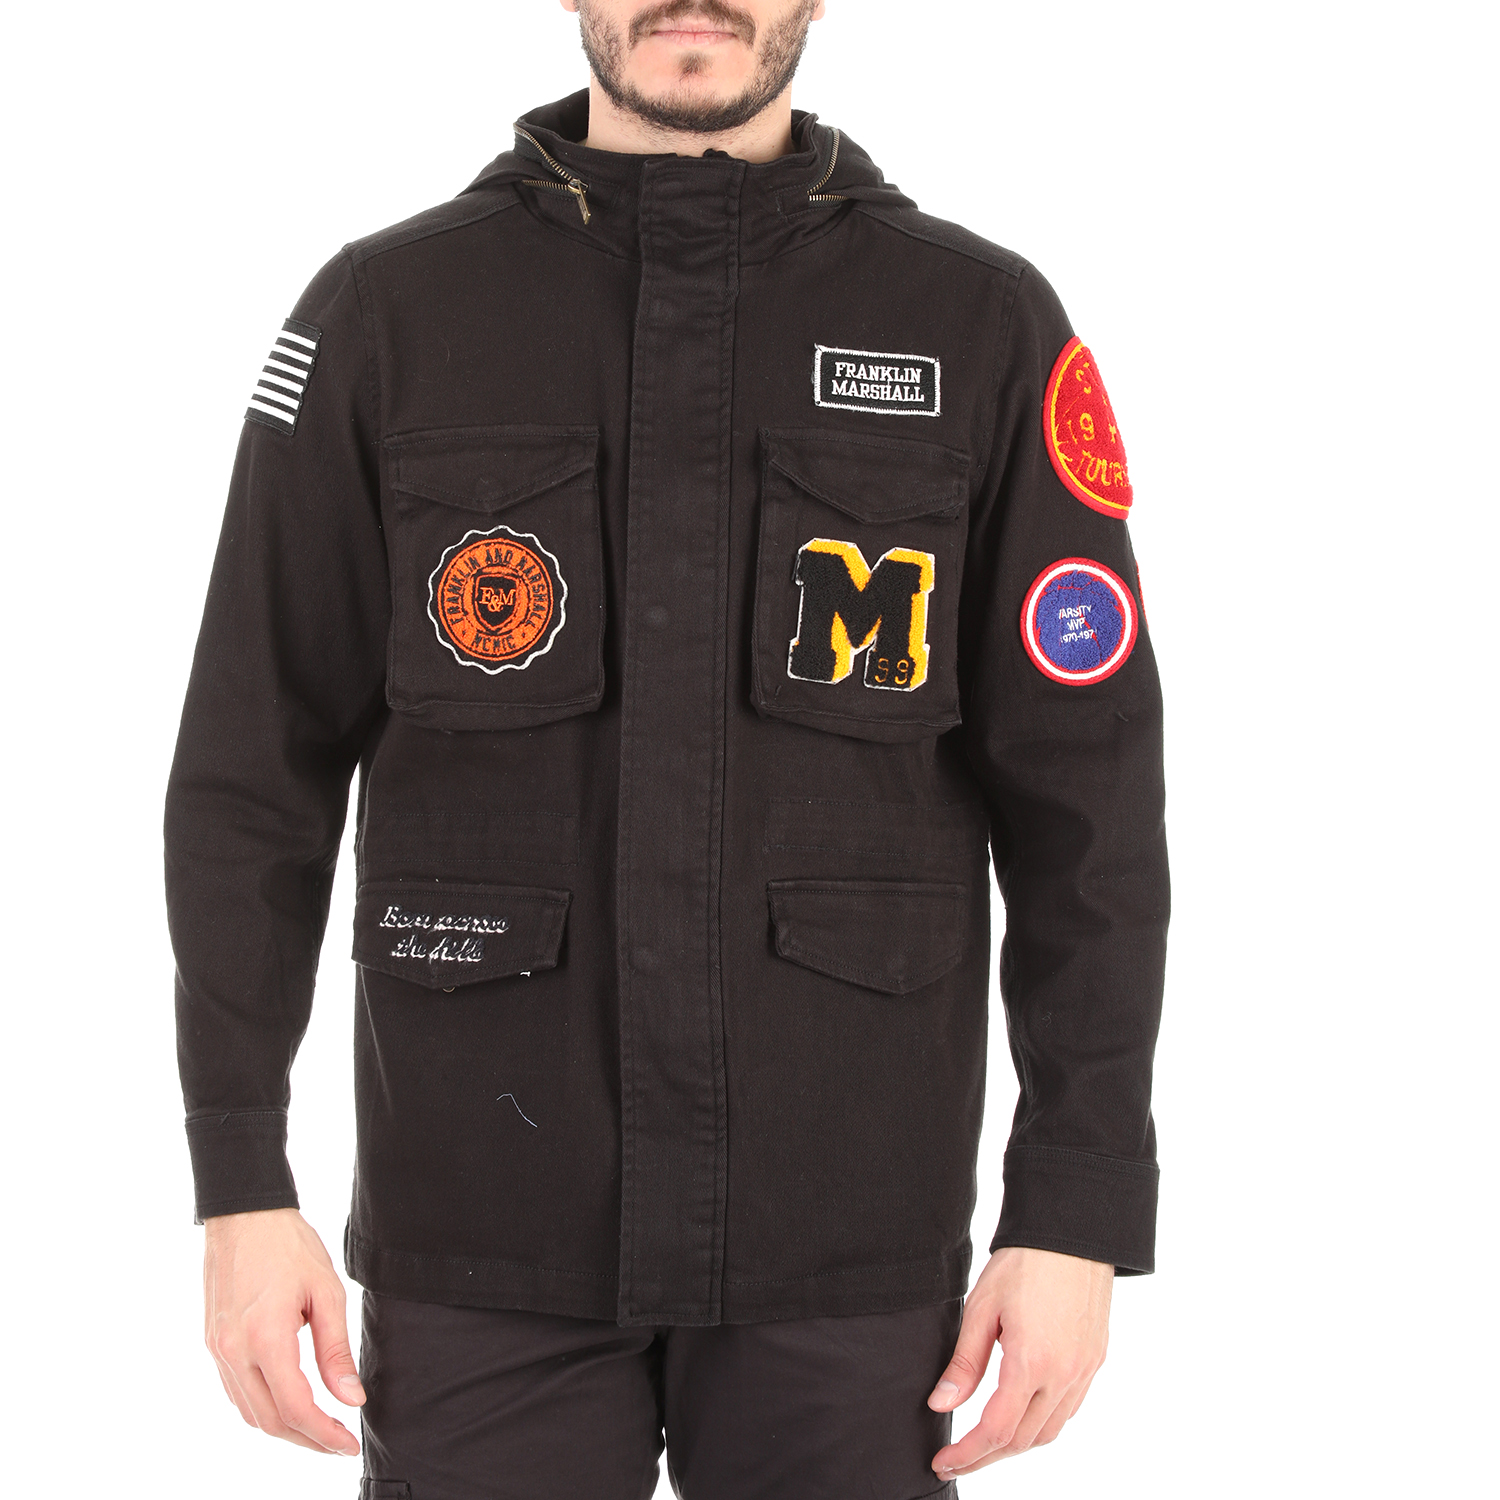 Ανδρικά/Ρούχα/Πανωφόρια/Τζάκετς FRANKLIN & MARSHALL - Ανδρικό jacket FRANKLIN & MARSHALL μαύρο